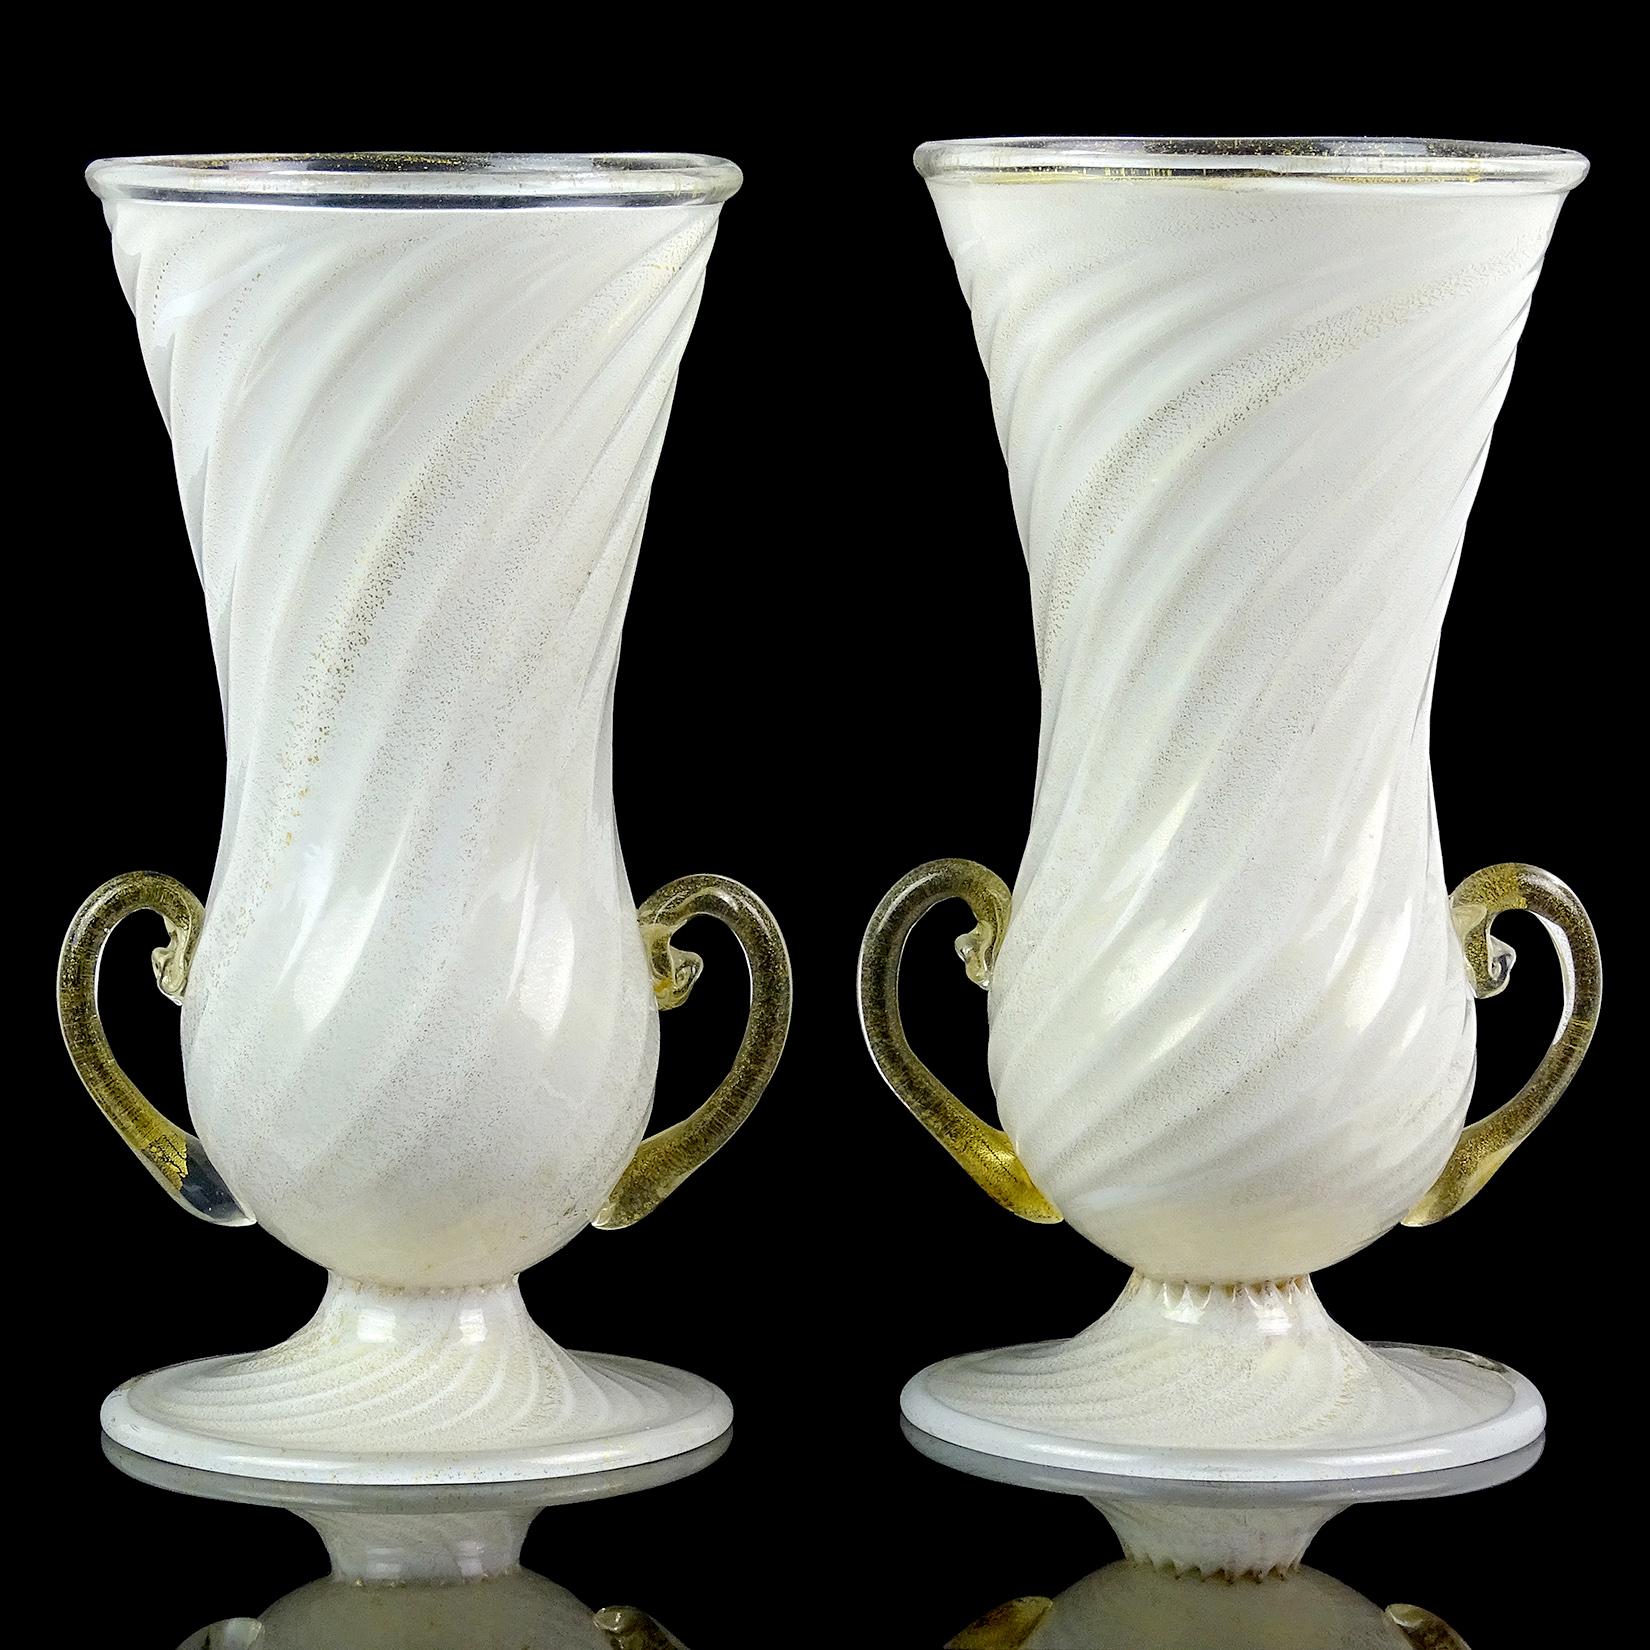 Magnifiques et rares vases de fleurs à double poignée en verre d'art italien soufflé à la main de Murano, blancs et mouchetés d'or. Documenté à la société Ferro Toso Barovier Vetreria Artistiche Riunite S. A., vers 1939-1942. L'un des vases conserve